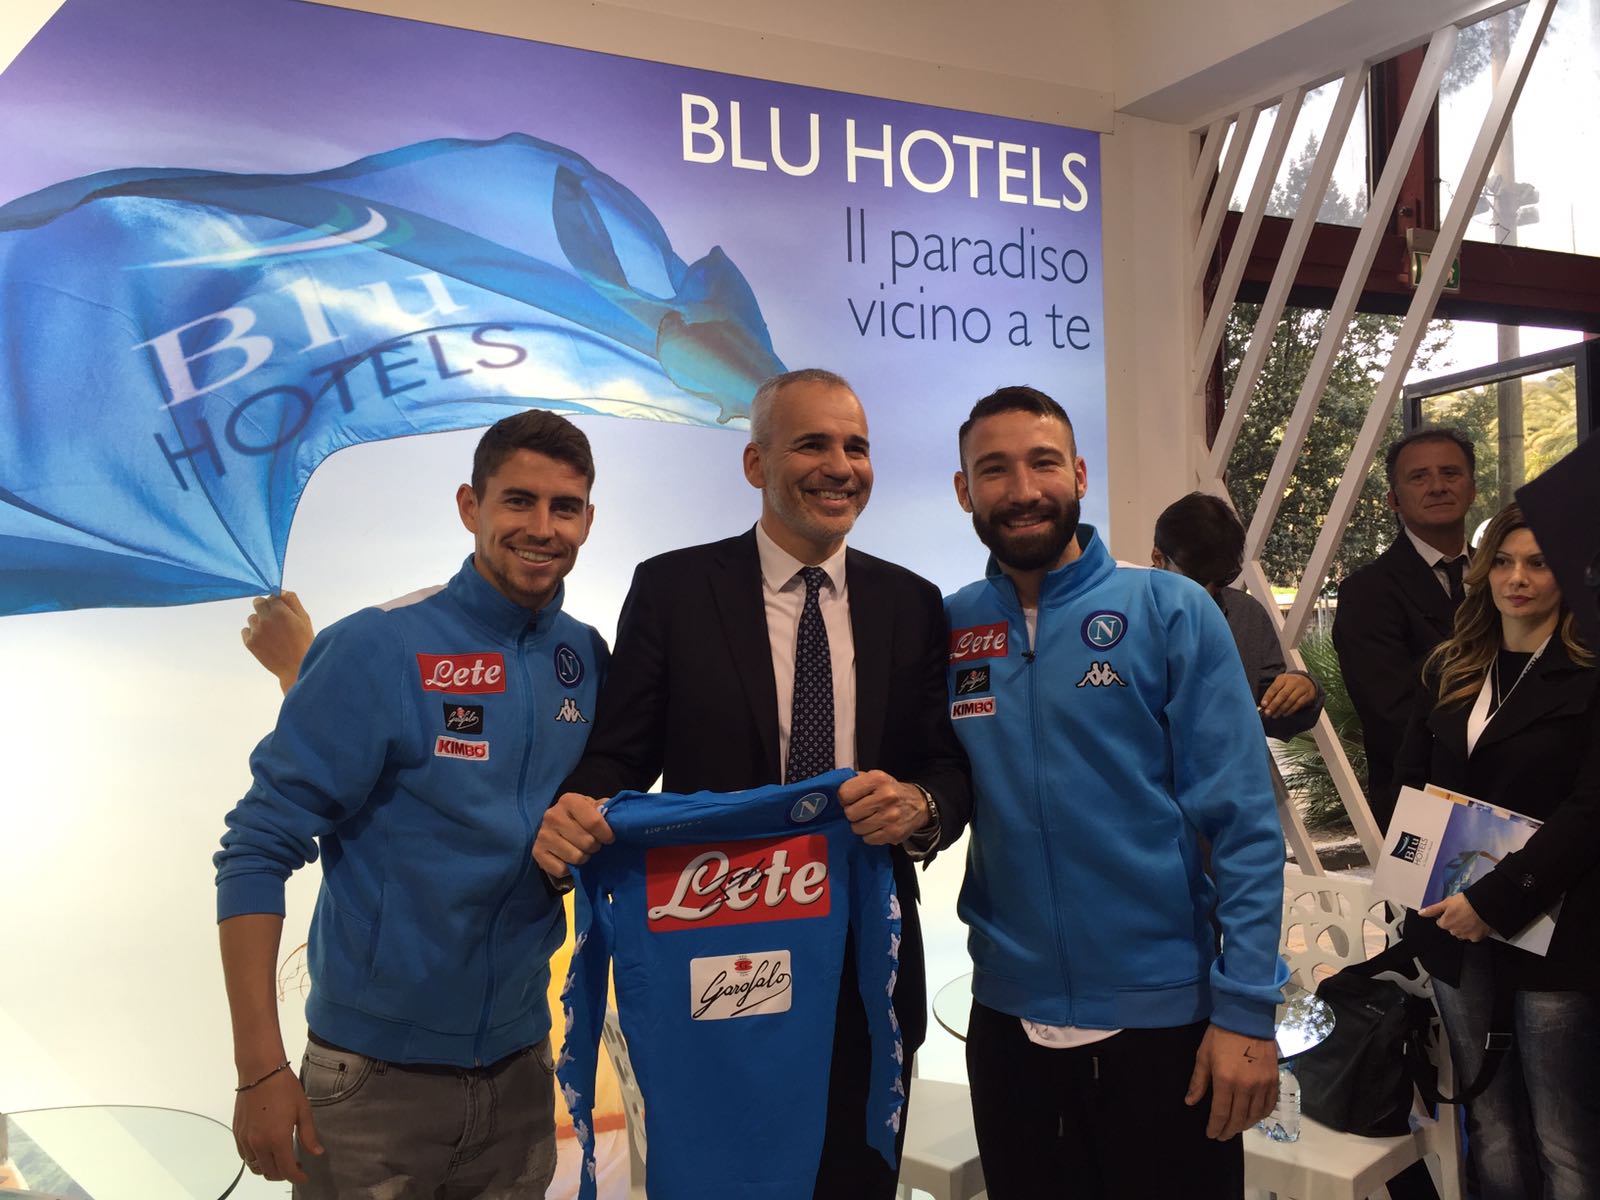  BMT, folla ed entusiasmo allo stand Blu Hotels per i calciatori del Napoli